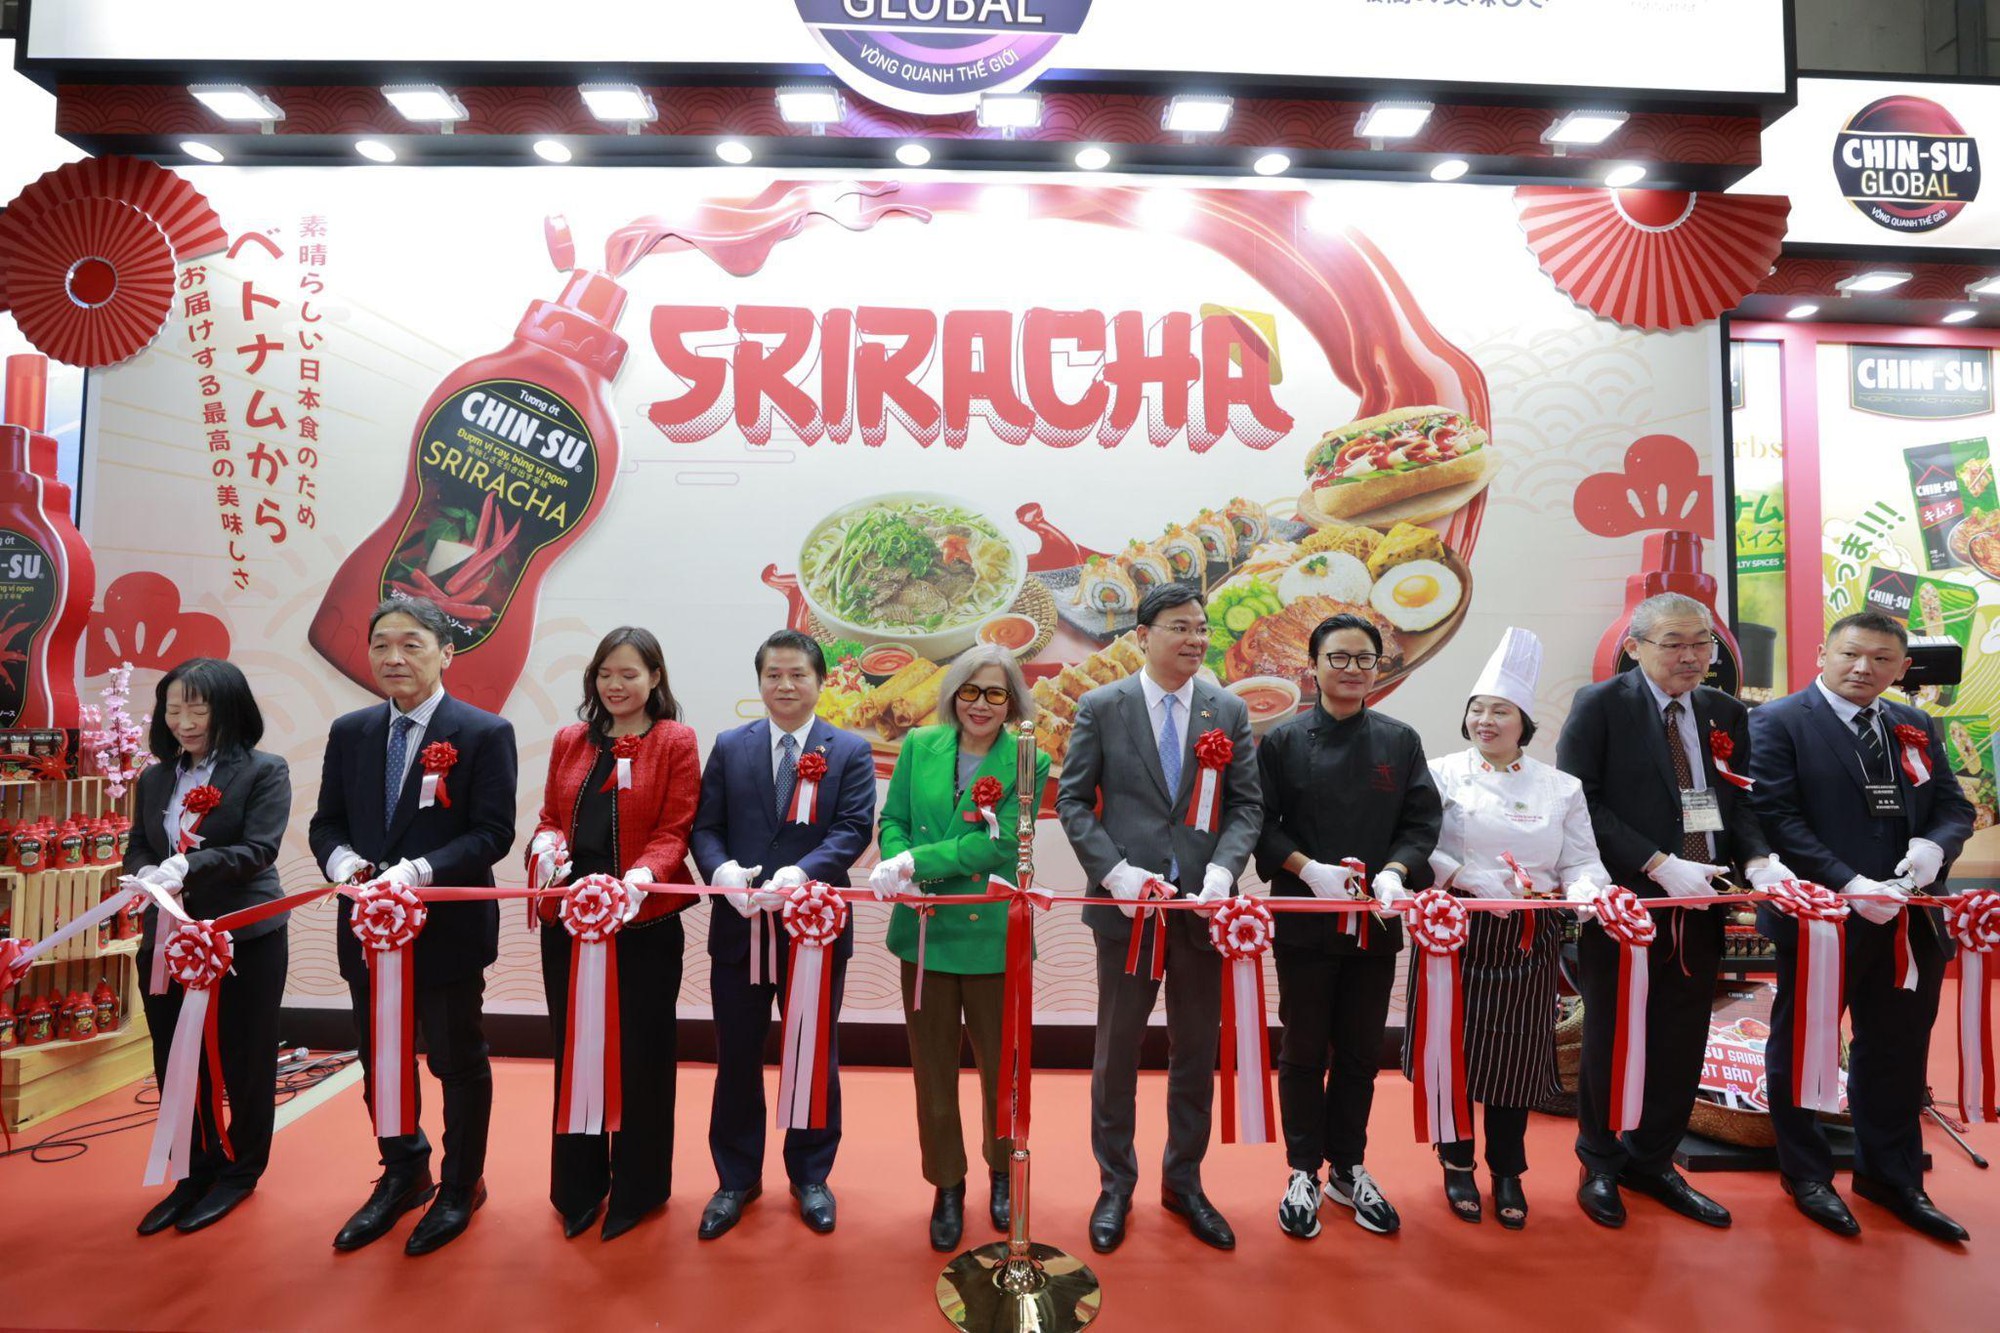 Tương ớt Chinsu Sriracha vừa ra mắt đã dậy sóng ở Nhật Bản, vì vị cay thơm cực độc đáo! - Ảnh 6.